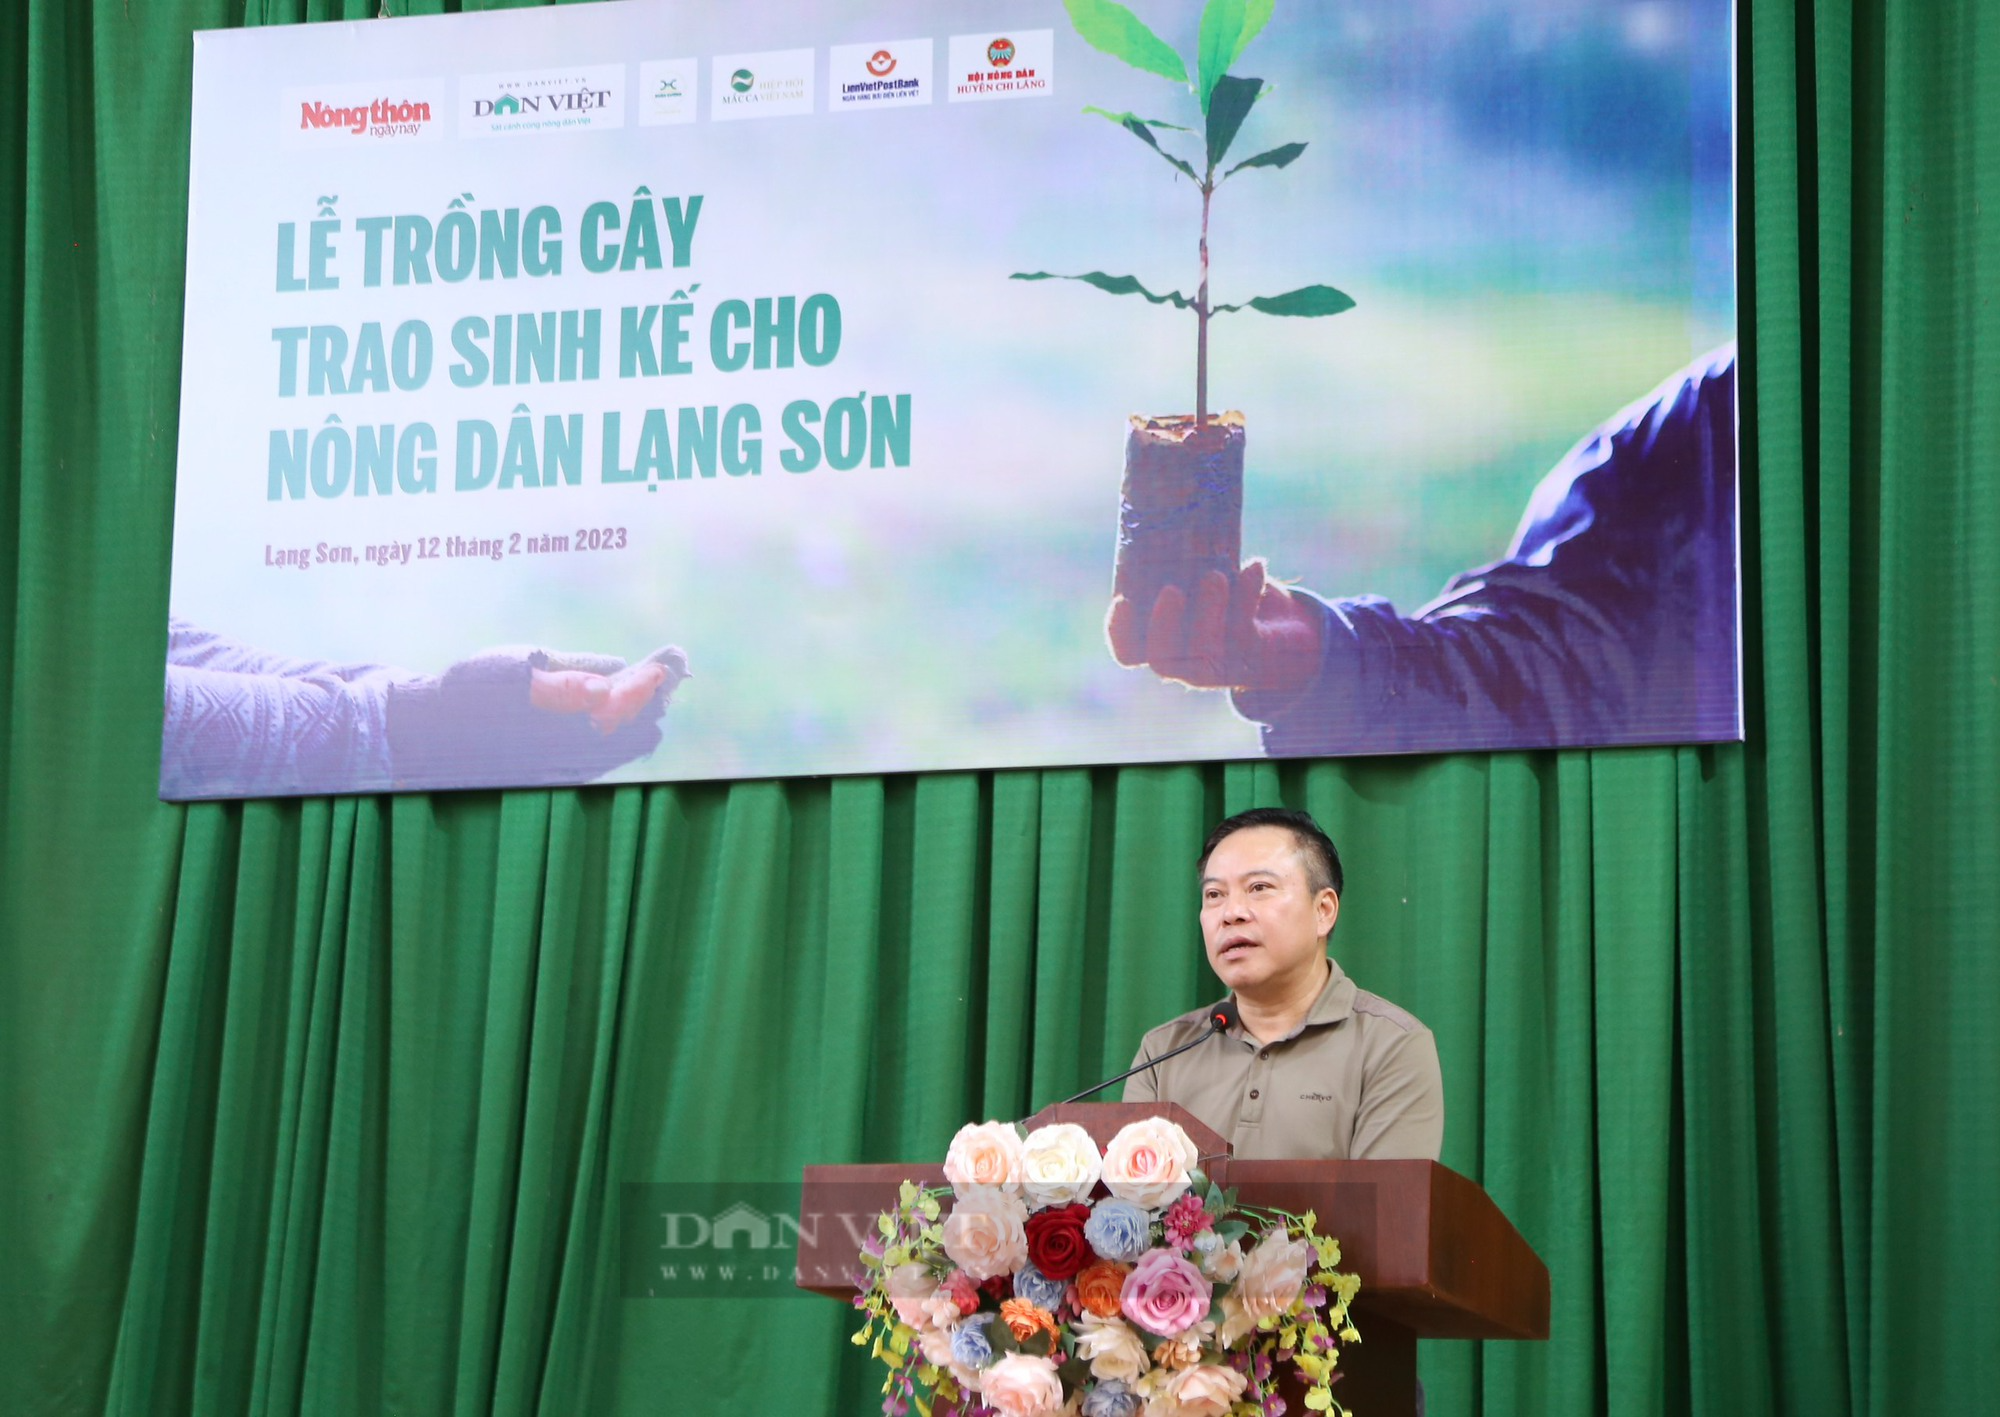 Báo Nông thôn ngày nay chung tay quảng bá sản phẩm Ocop tỉnh Lạng Sơn - Ảnh 2.